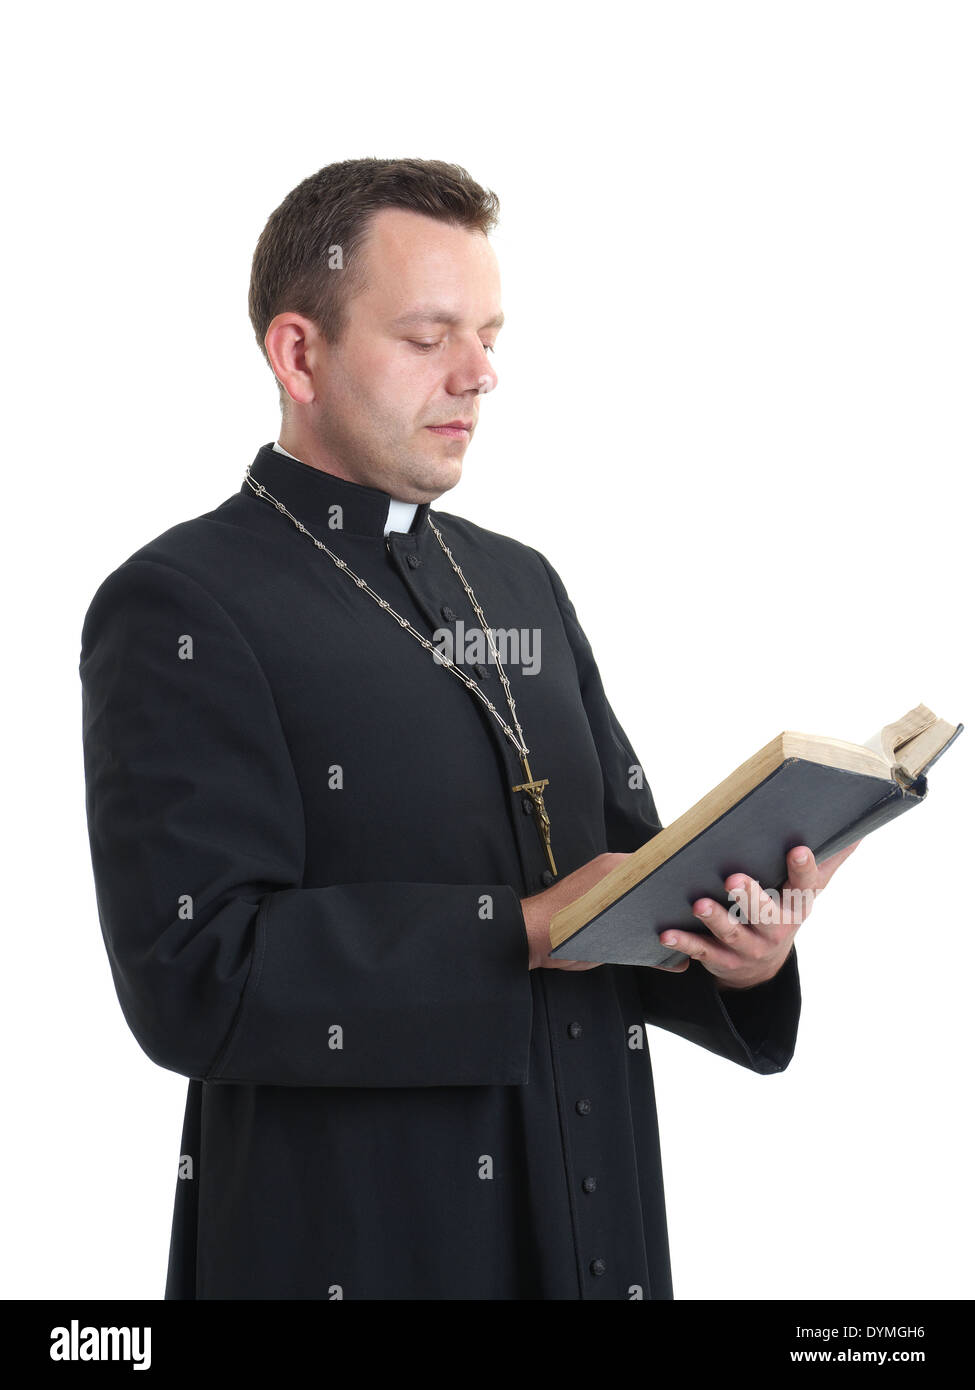 Prêtre catholique, la lecture de la Sainte Bible shot on white Banque D'Images